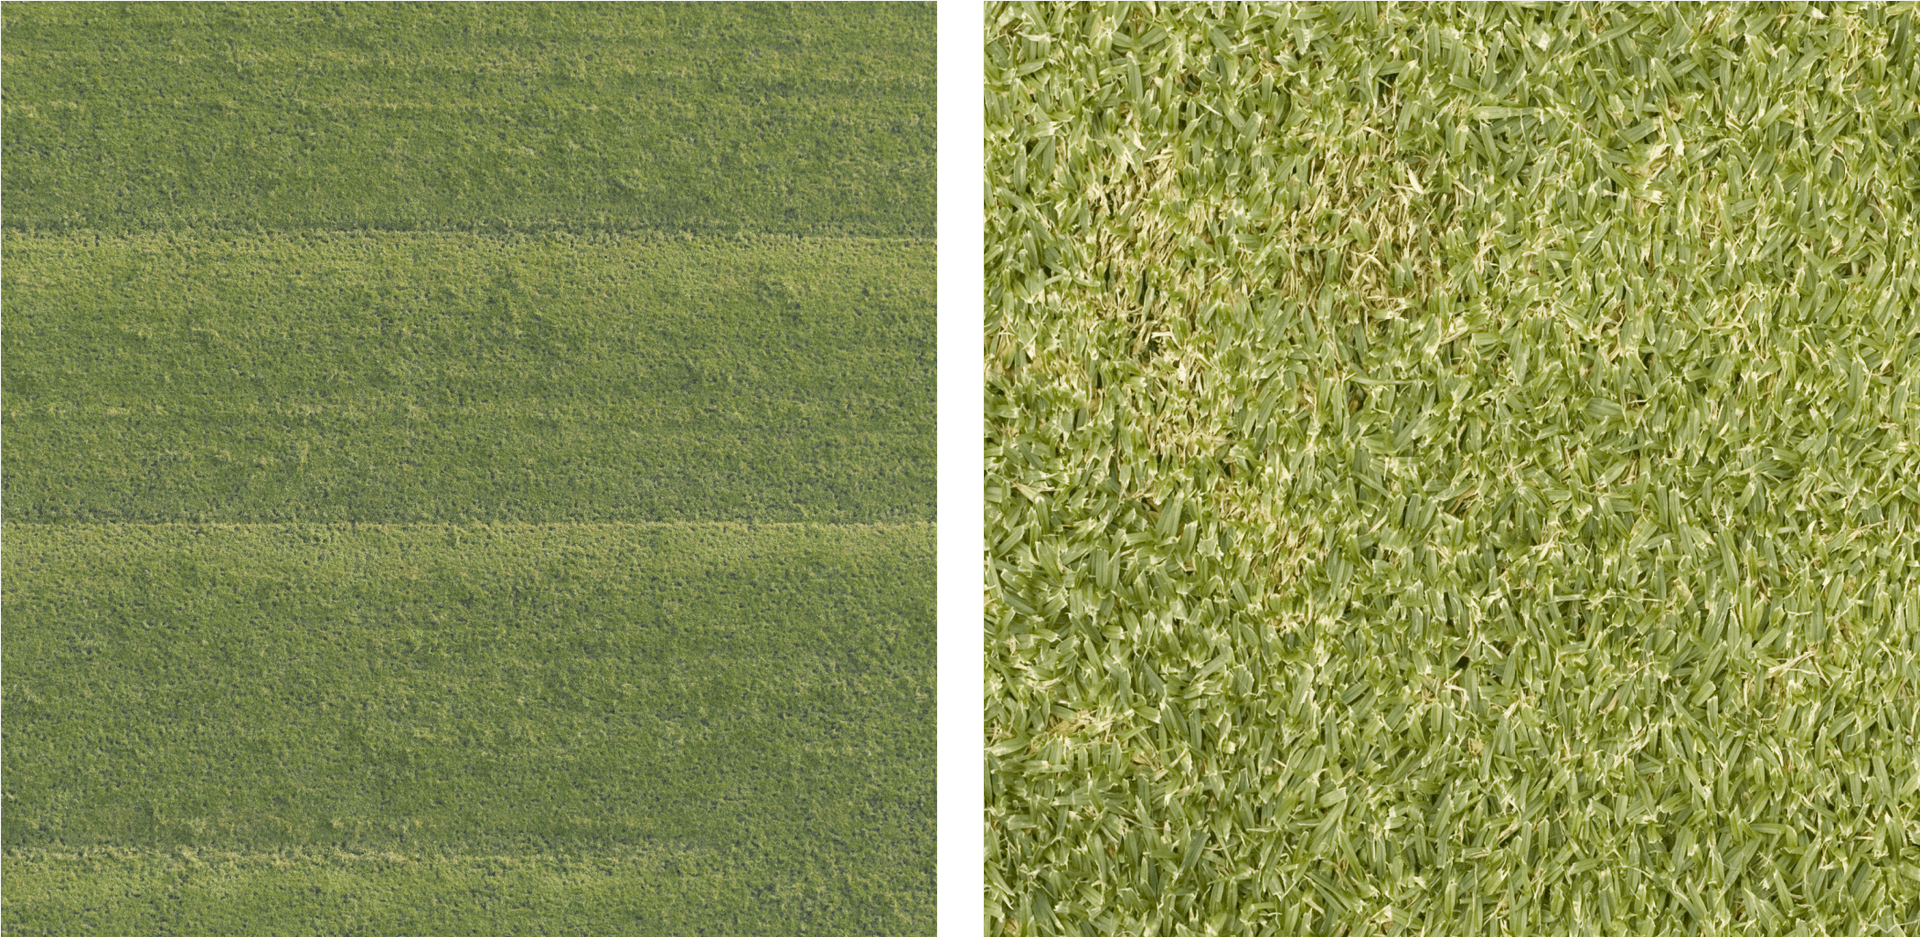 Lawn Grass Textures Comparison PNG image